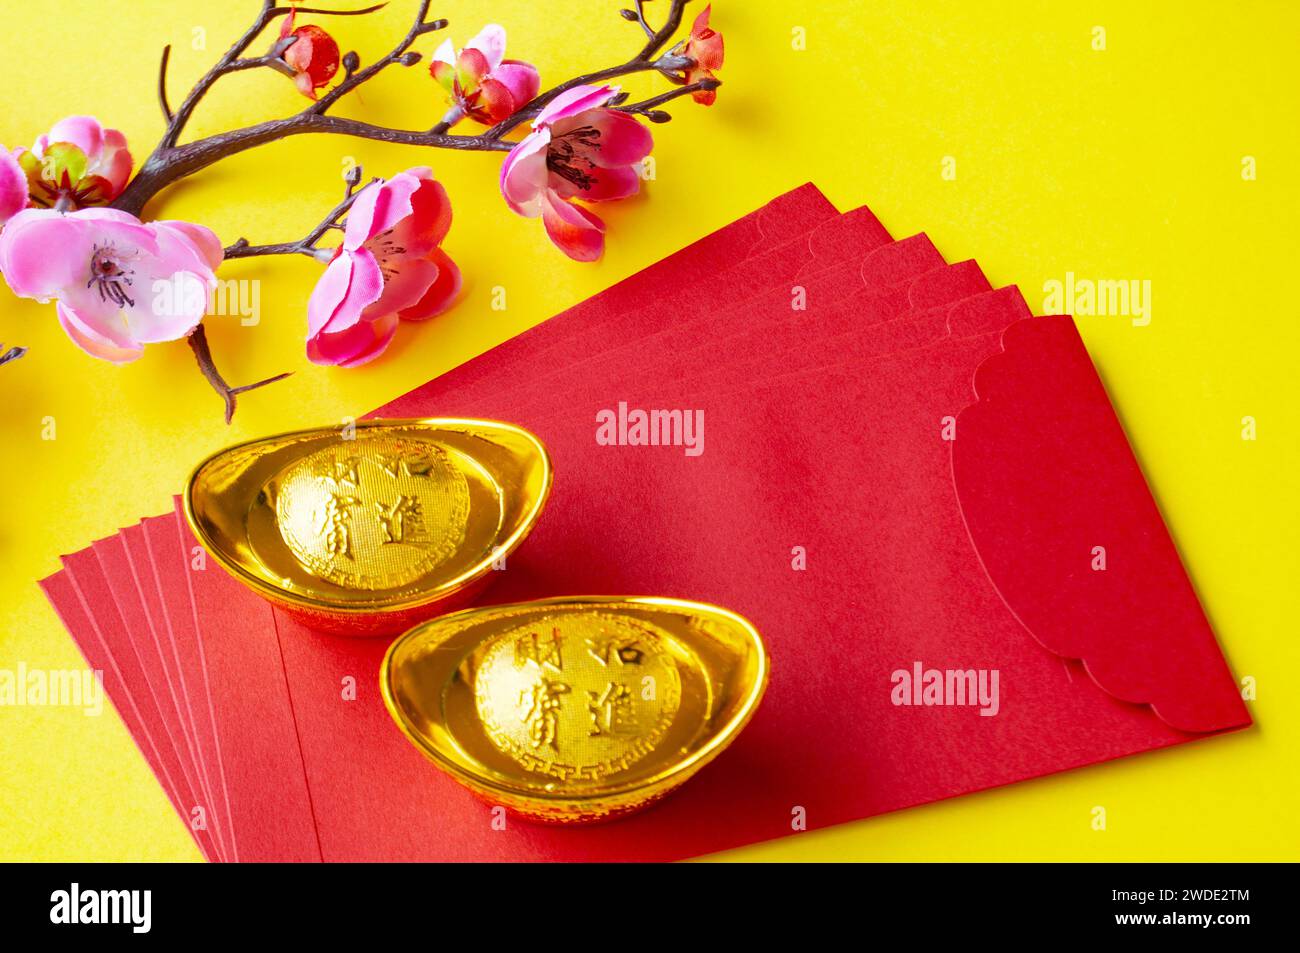 Vista dall'alto del pacchetto rosso del capodanno cinese, fiori di ciliegio e lingotti dorati. Foto Stock